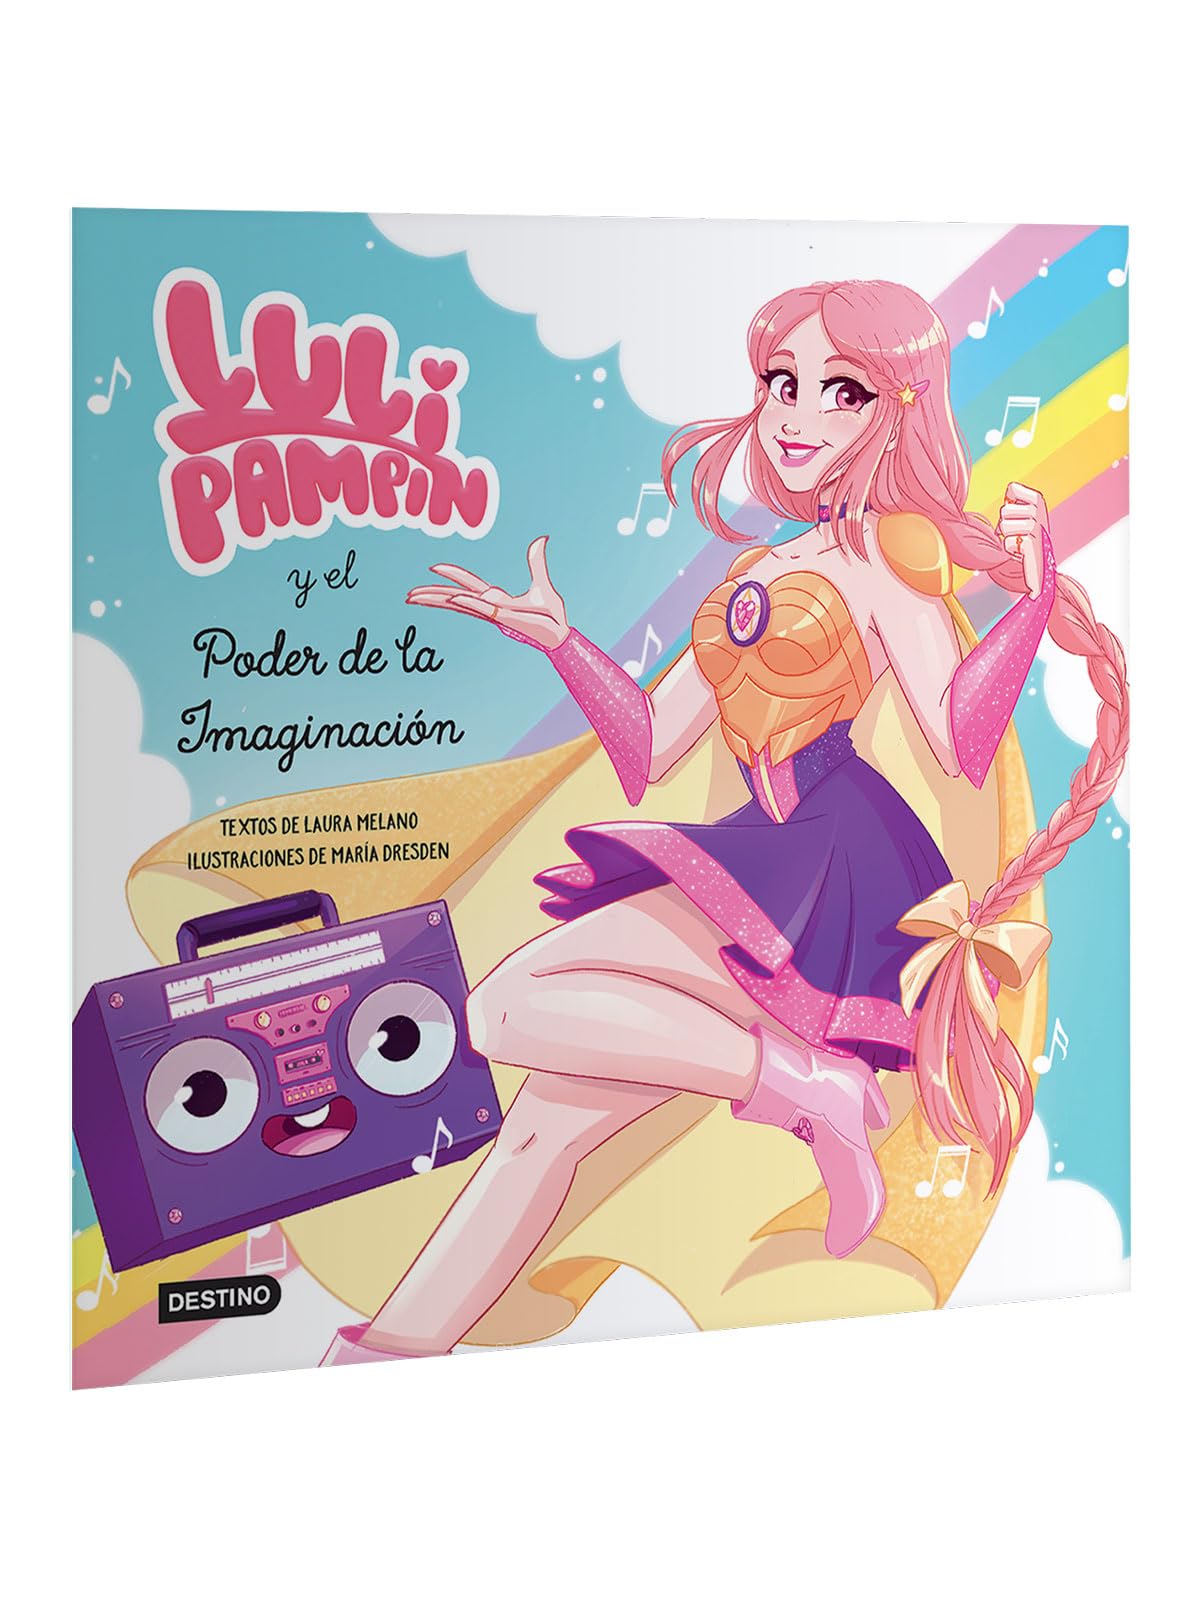 Luli Pampín y el poder de la imaginación (Spanish Edition)